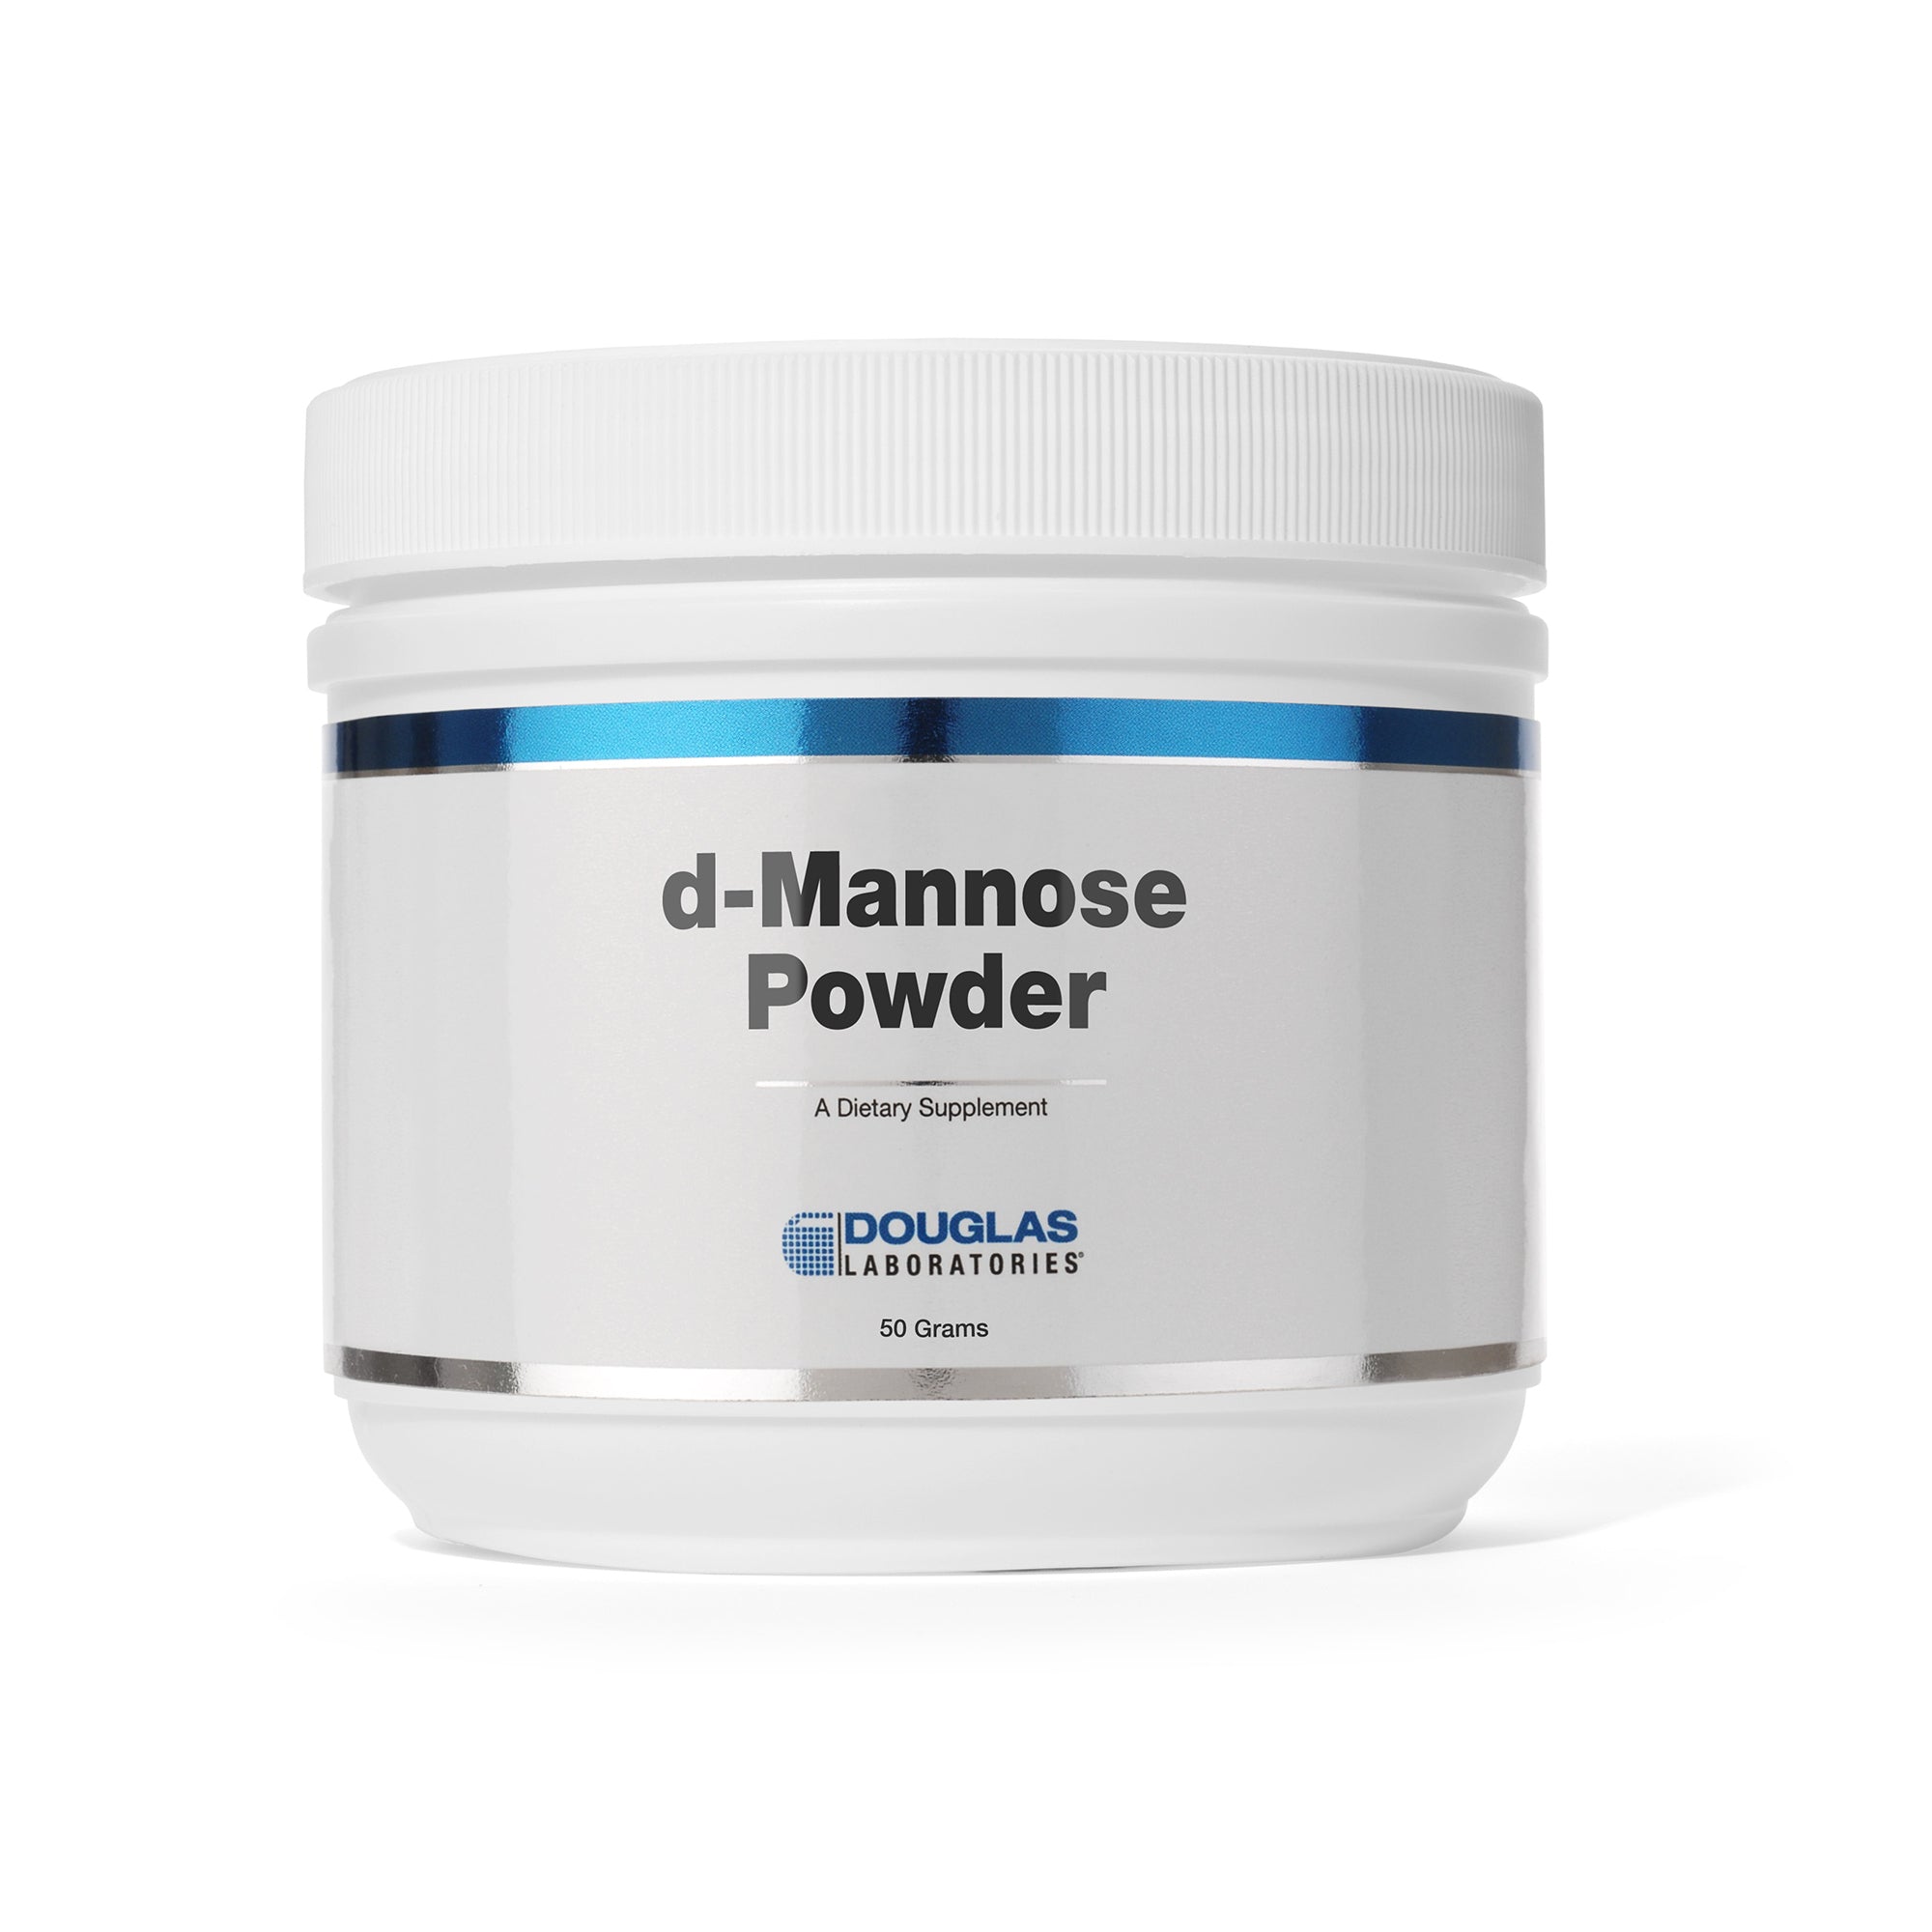 Douglas Laboratories d-Mannose Powder